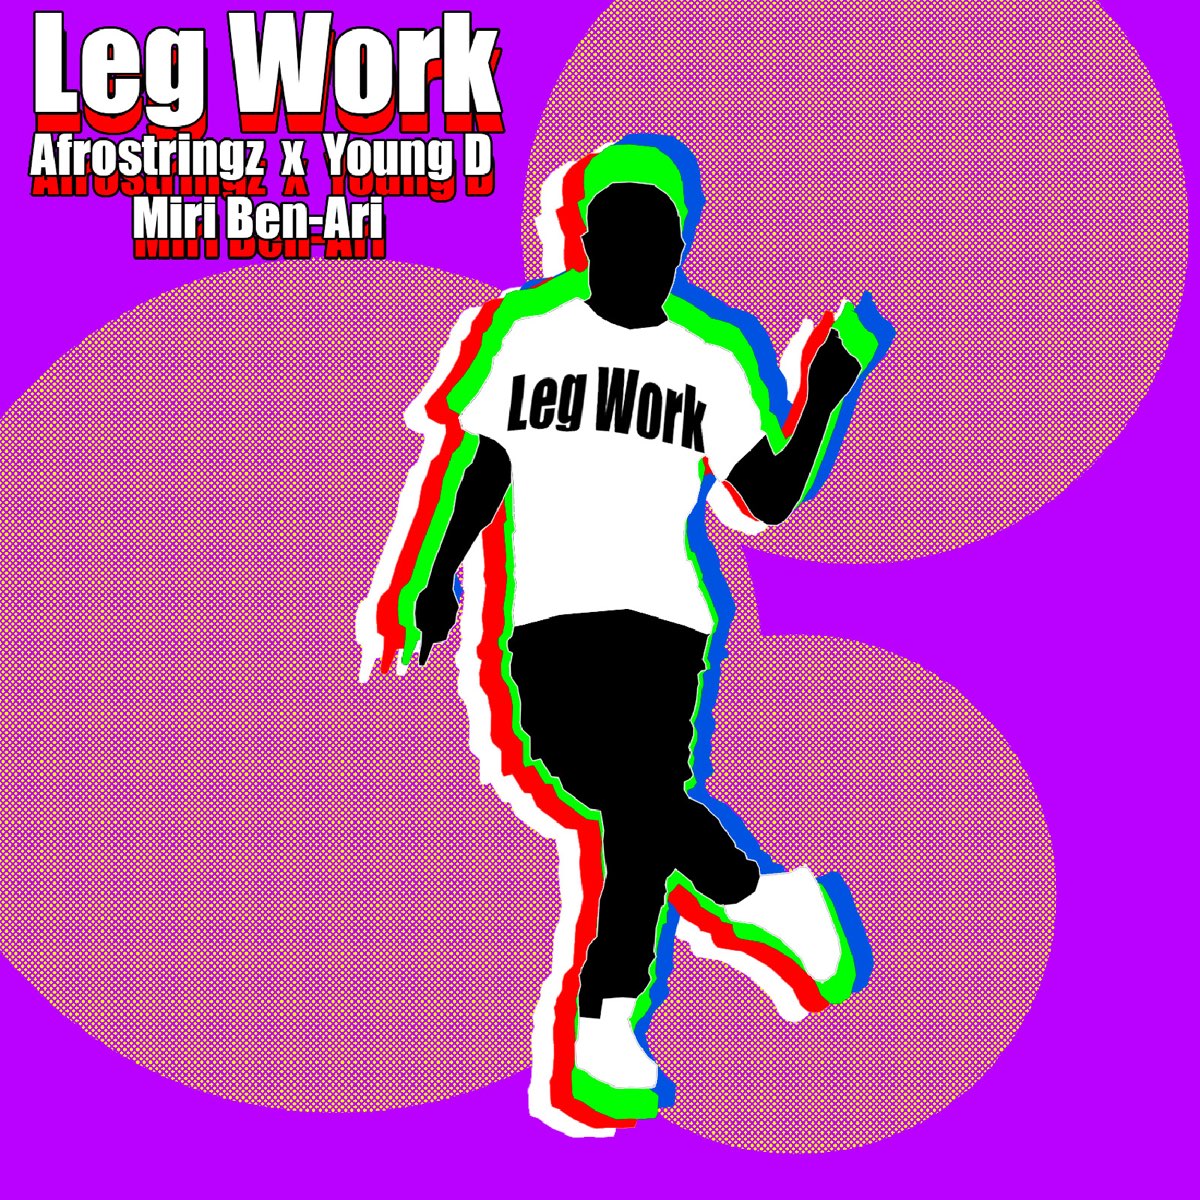 Leg work. Мири Бен-Ари.